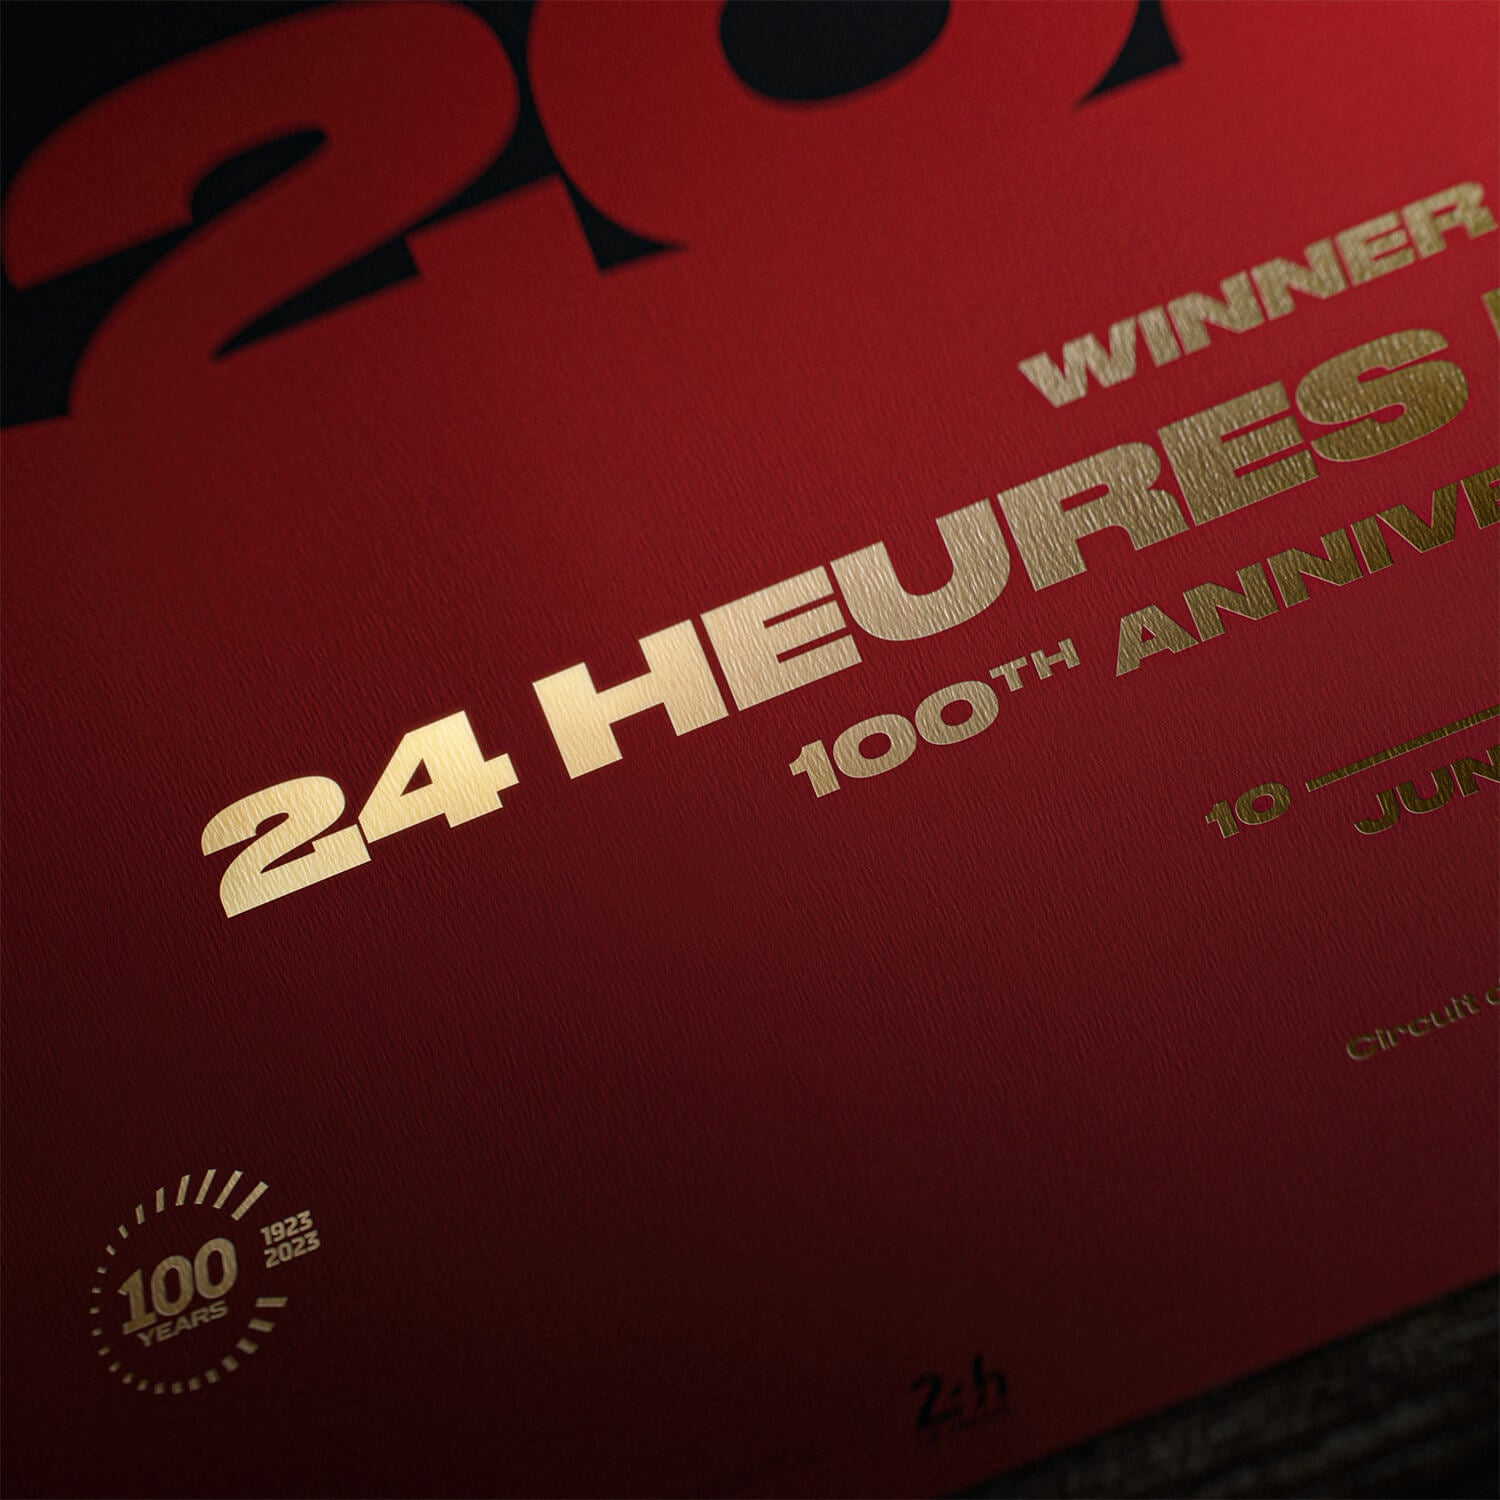 Ferrari 499P - 24h Le Mans Winners - 100th Anniversary - 2023